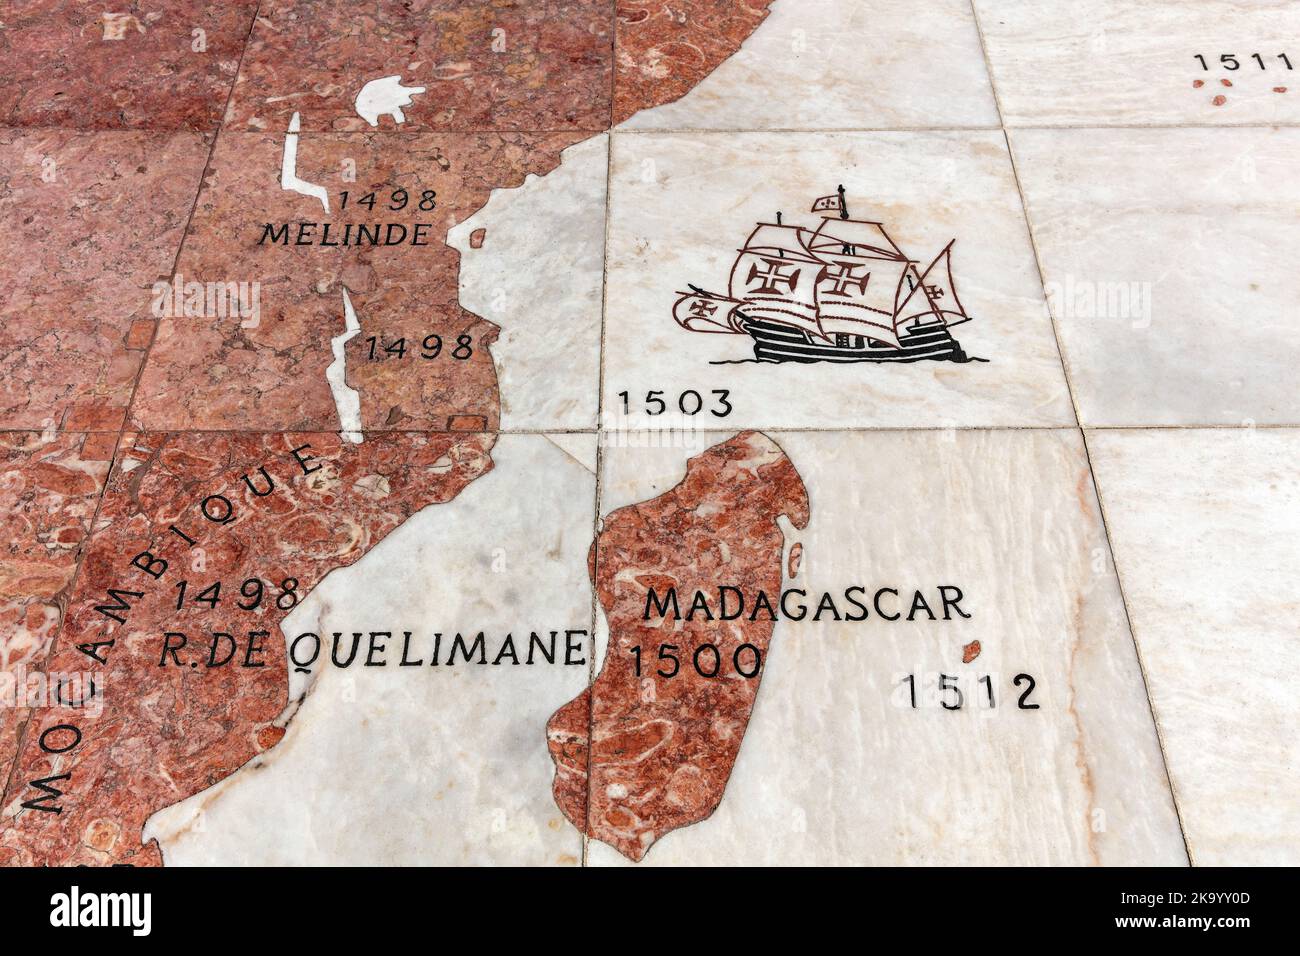 Mappa delle scoperte portoghesi in Africa orientale sul terreno dietro il Monumento alle scoperte, Belem, Lisbona, Portogallo Foto Stock